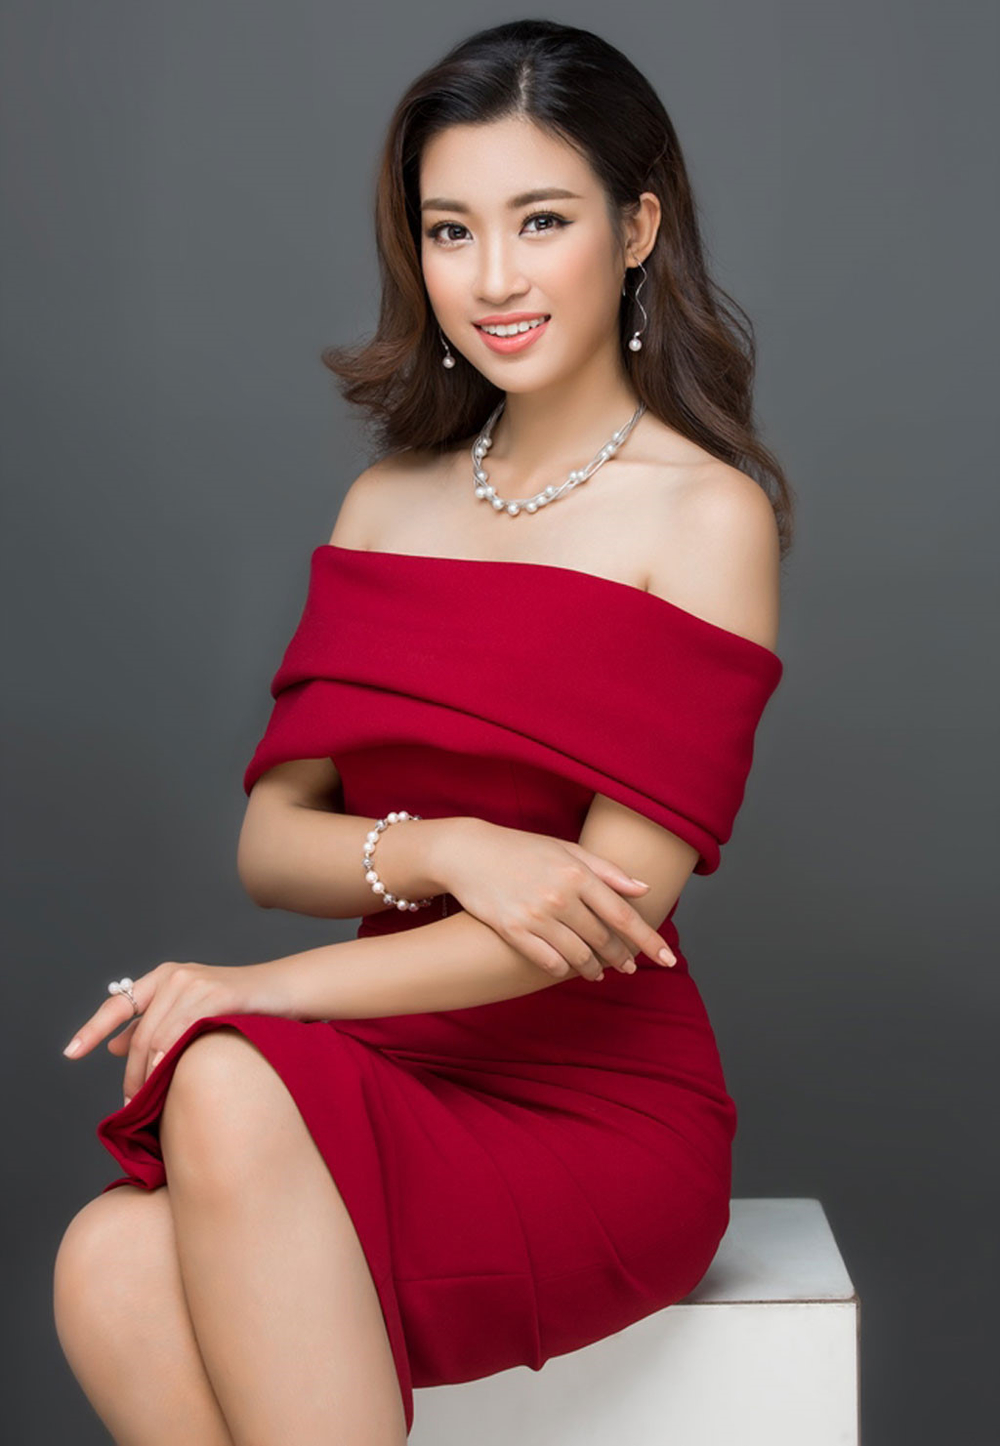 5 lý do khiến khán giả tranh cãi về vị trí giám khảo Hoa hậu Việt Nam 2018 của Đỗ Mỹ Linh